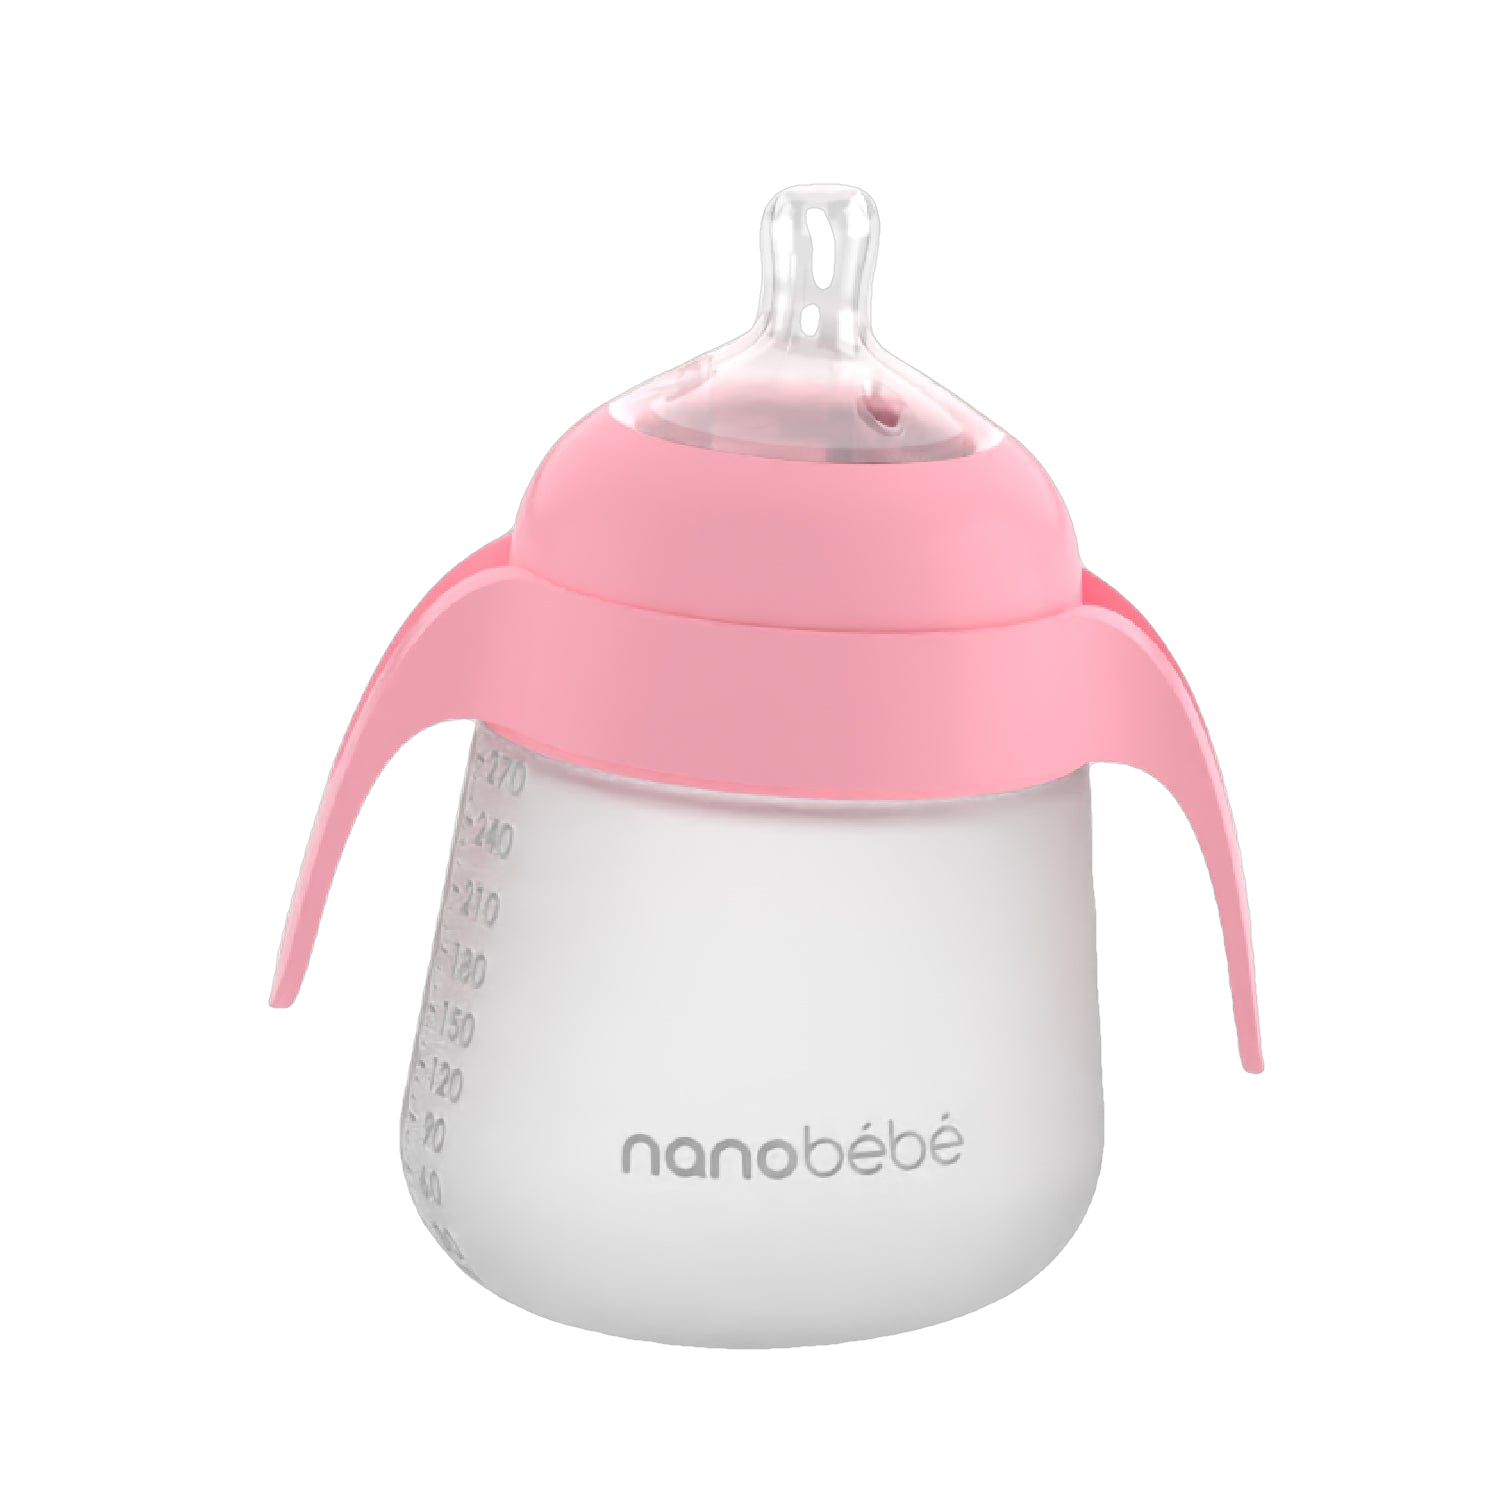 https://easytot.com/cdn/shop/products/Nanobebe-Quick-Click-Handles-Pink-On-Bottle-New-Design.png?v=1680203538&width=1500